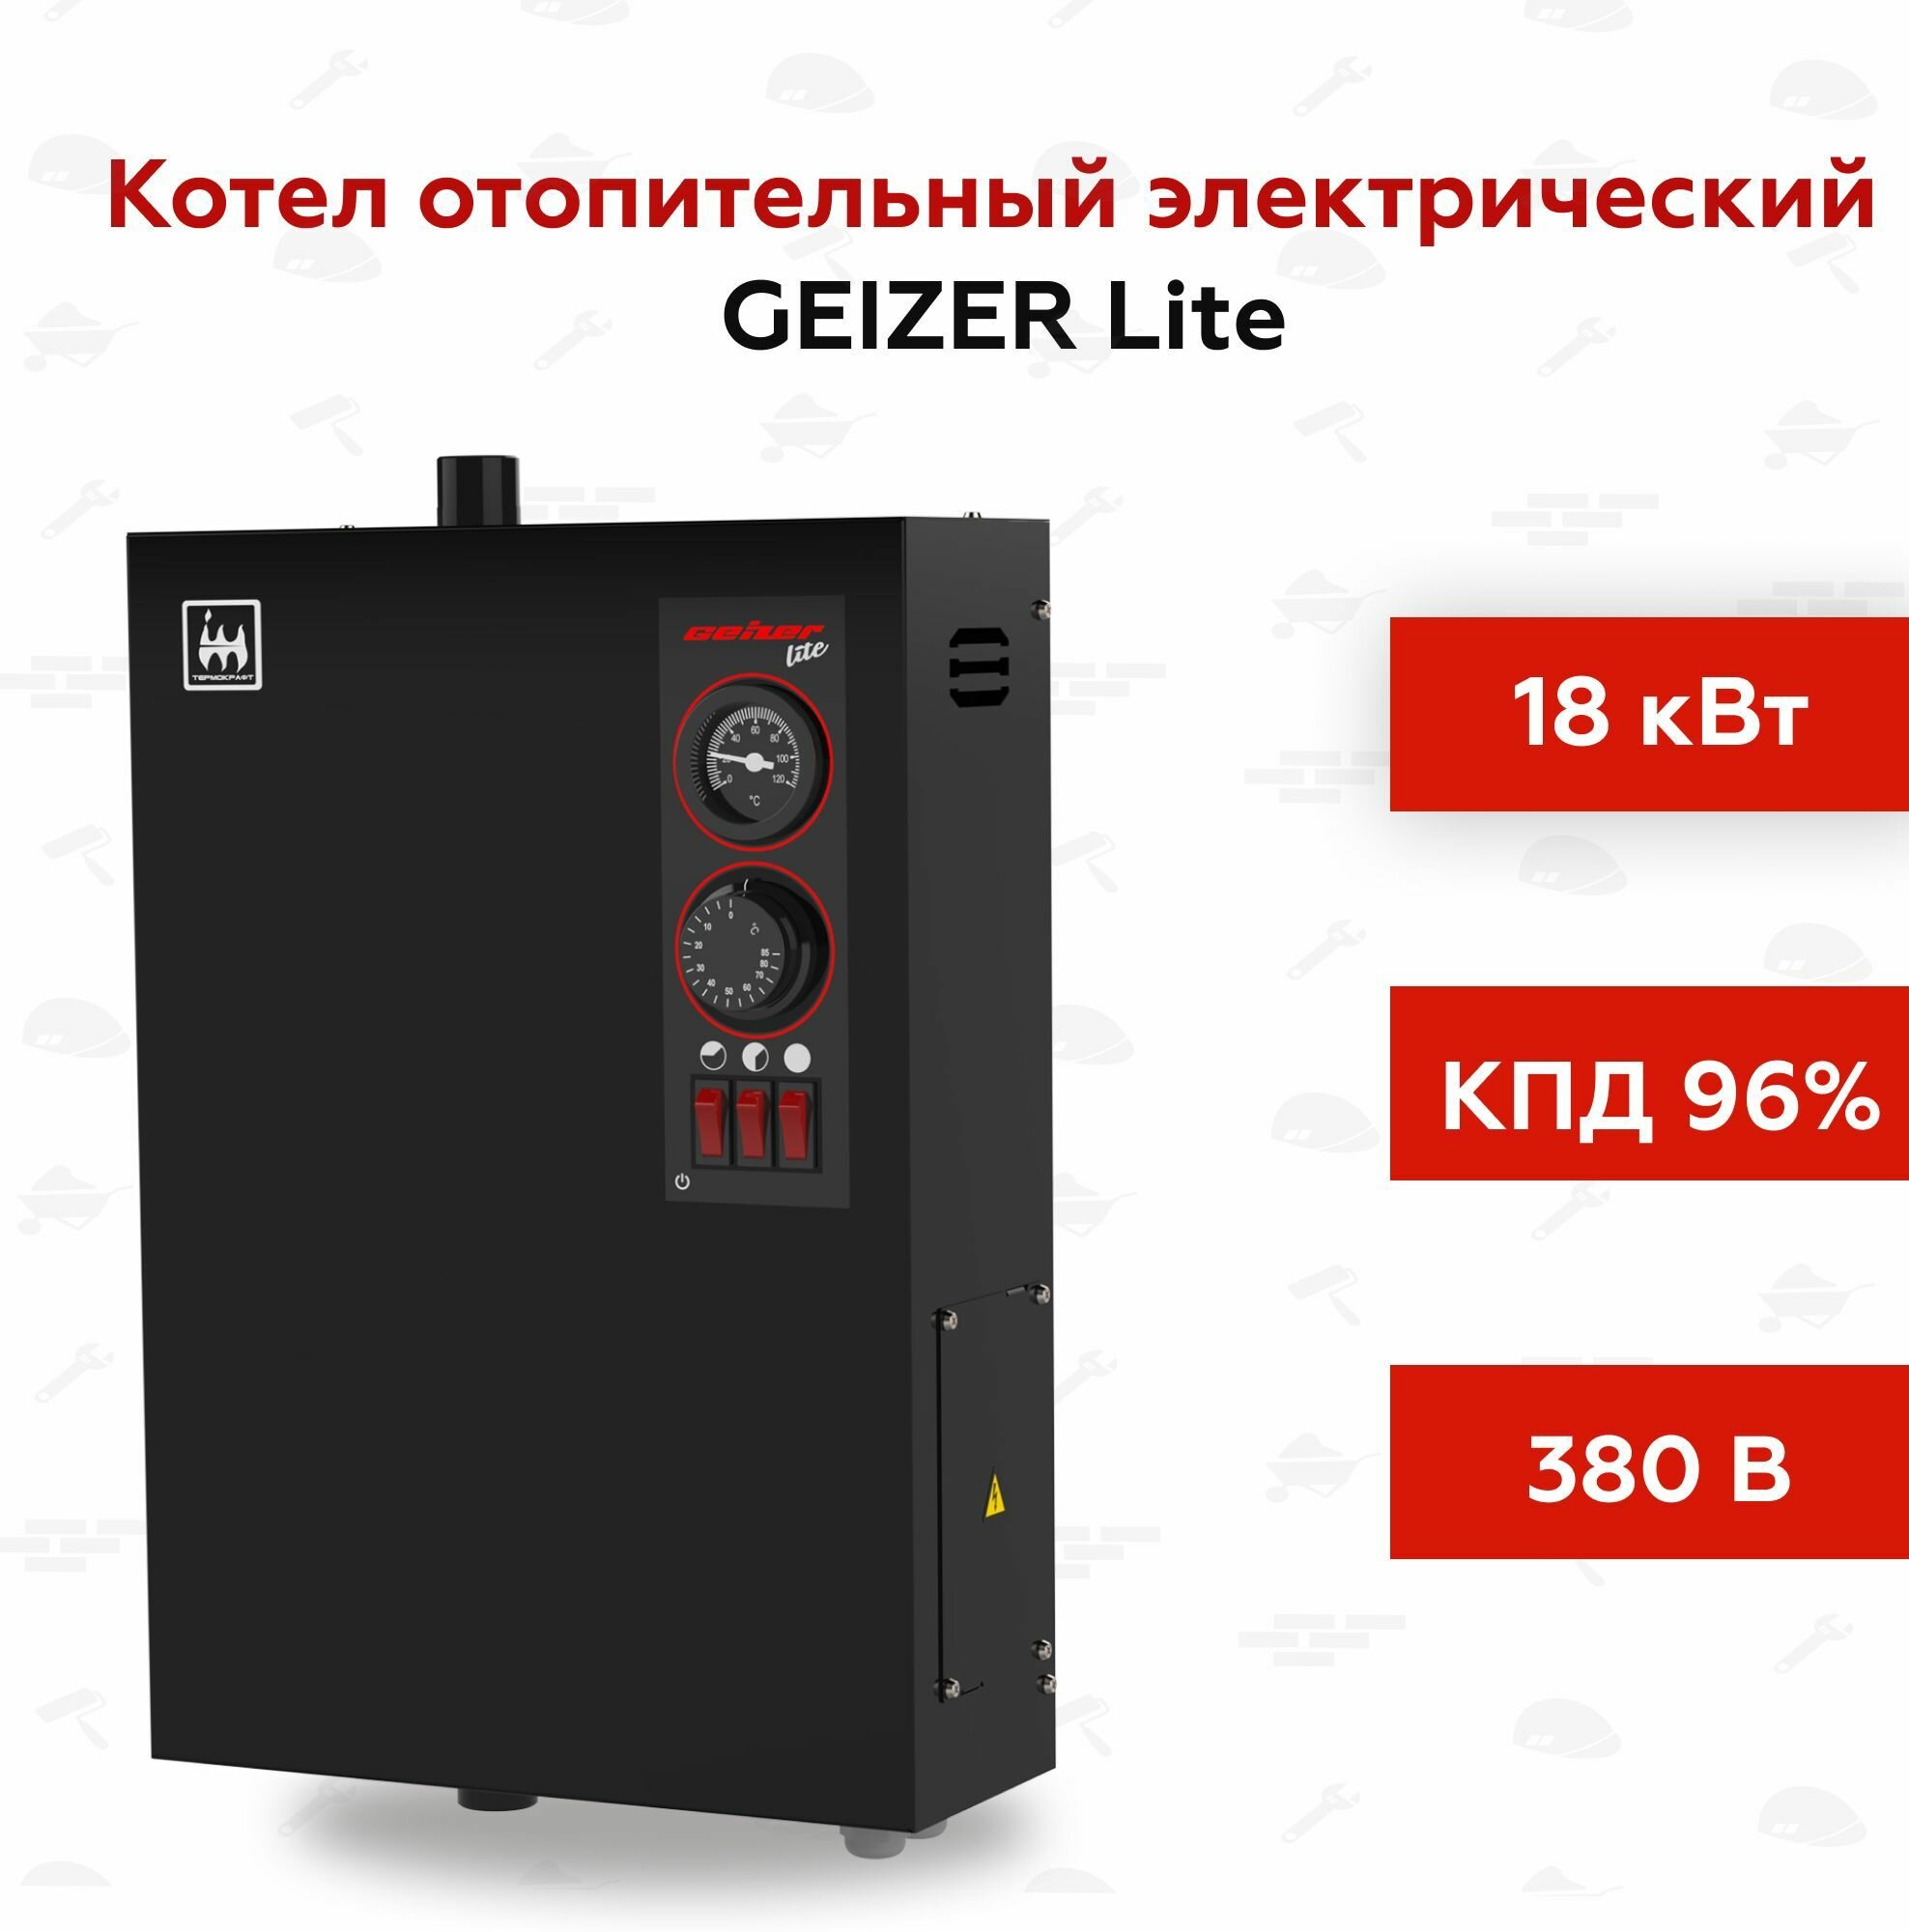 Котел отопительный электрический GEIZER Lite 18 кВт